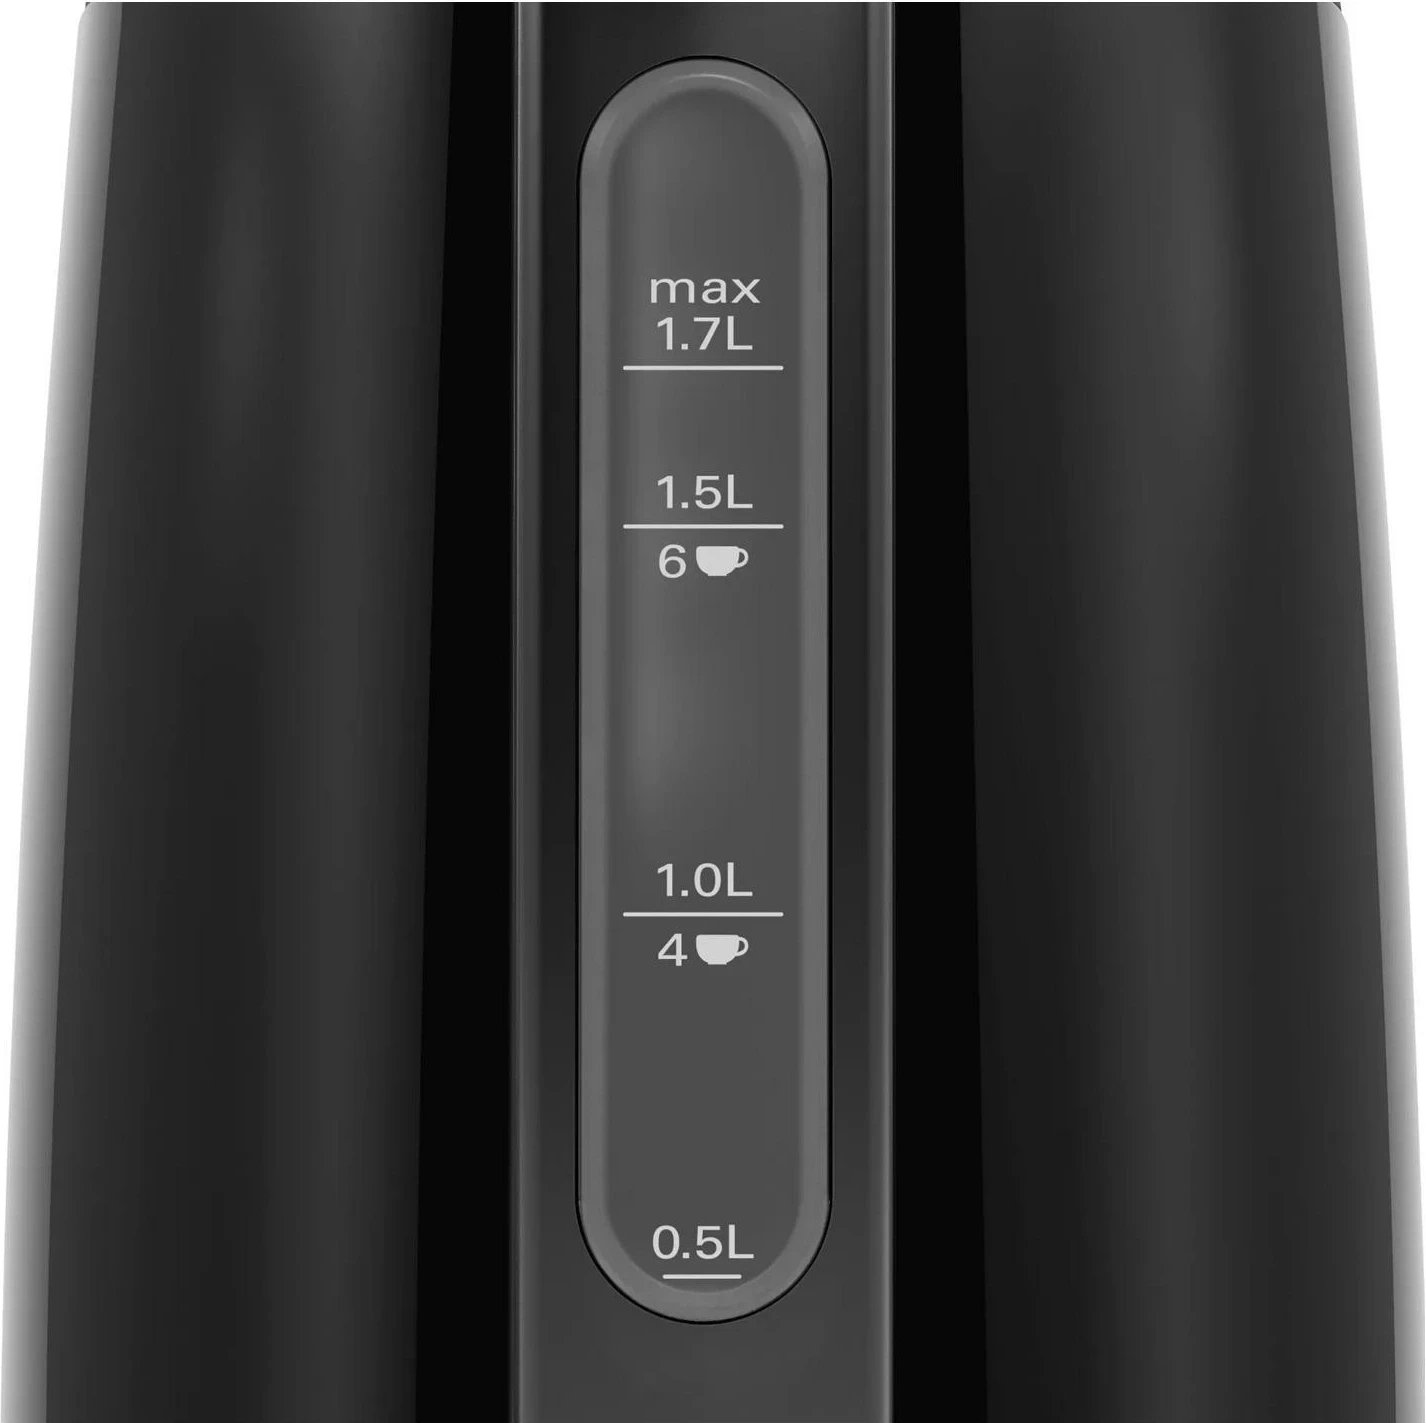 Ibrik Elektrik Bosch DesignLine TWK3P42, 1.7L, ngjyrë e zezë